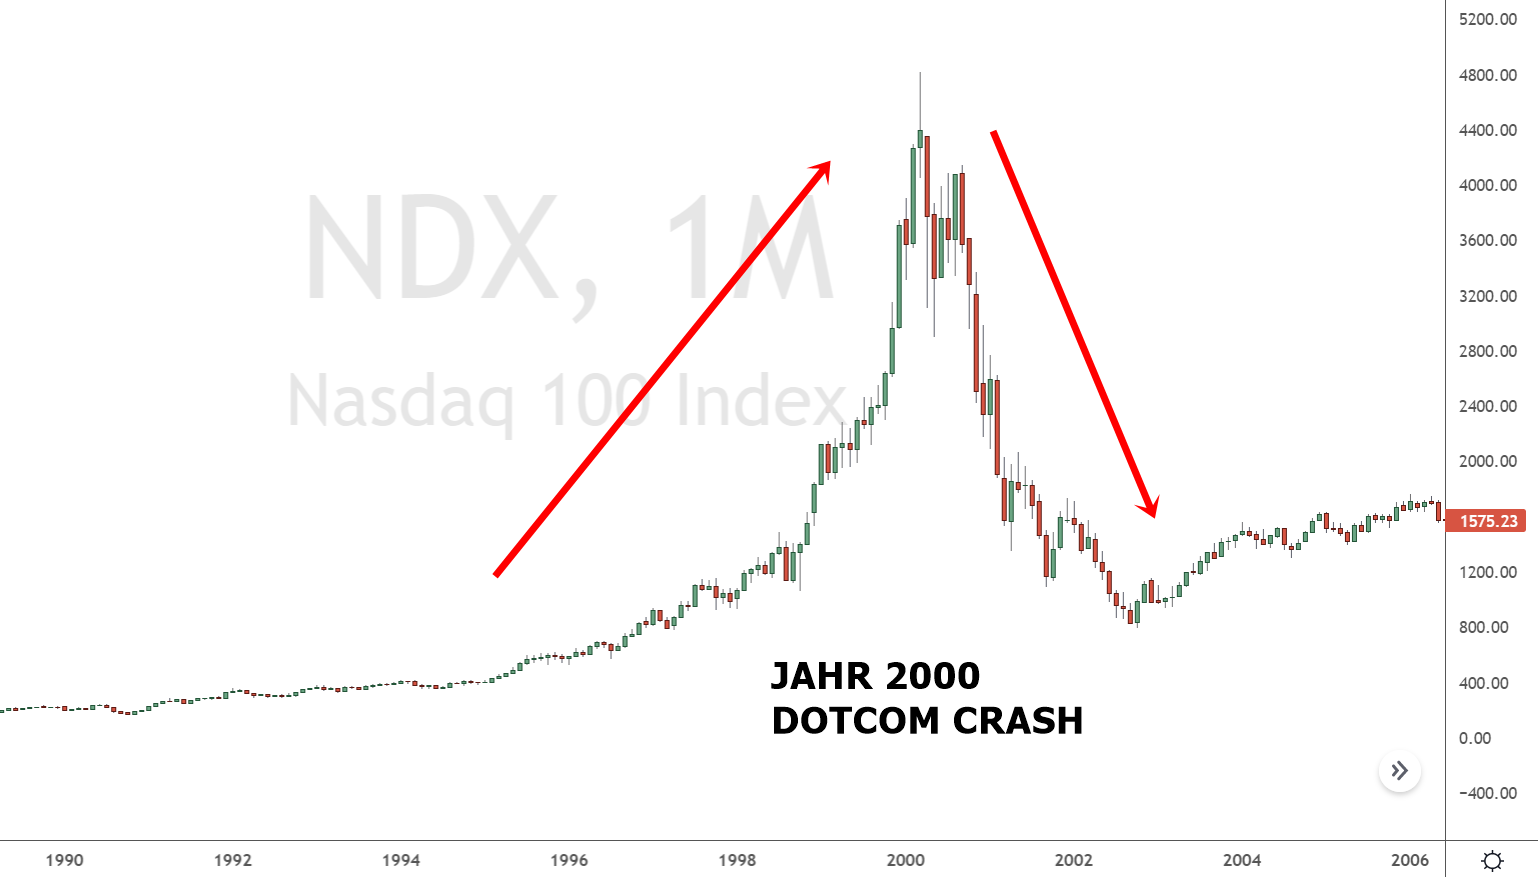 DOTCOM Crash im Jahr 2000 - Nasdaq 100 Index (Chart)